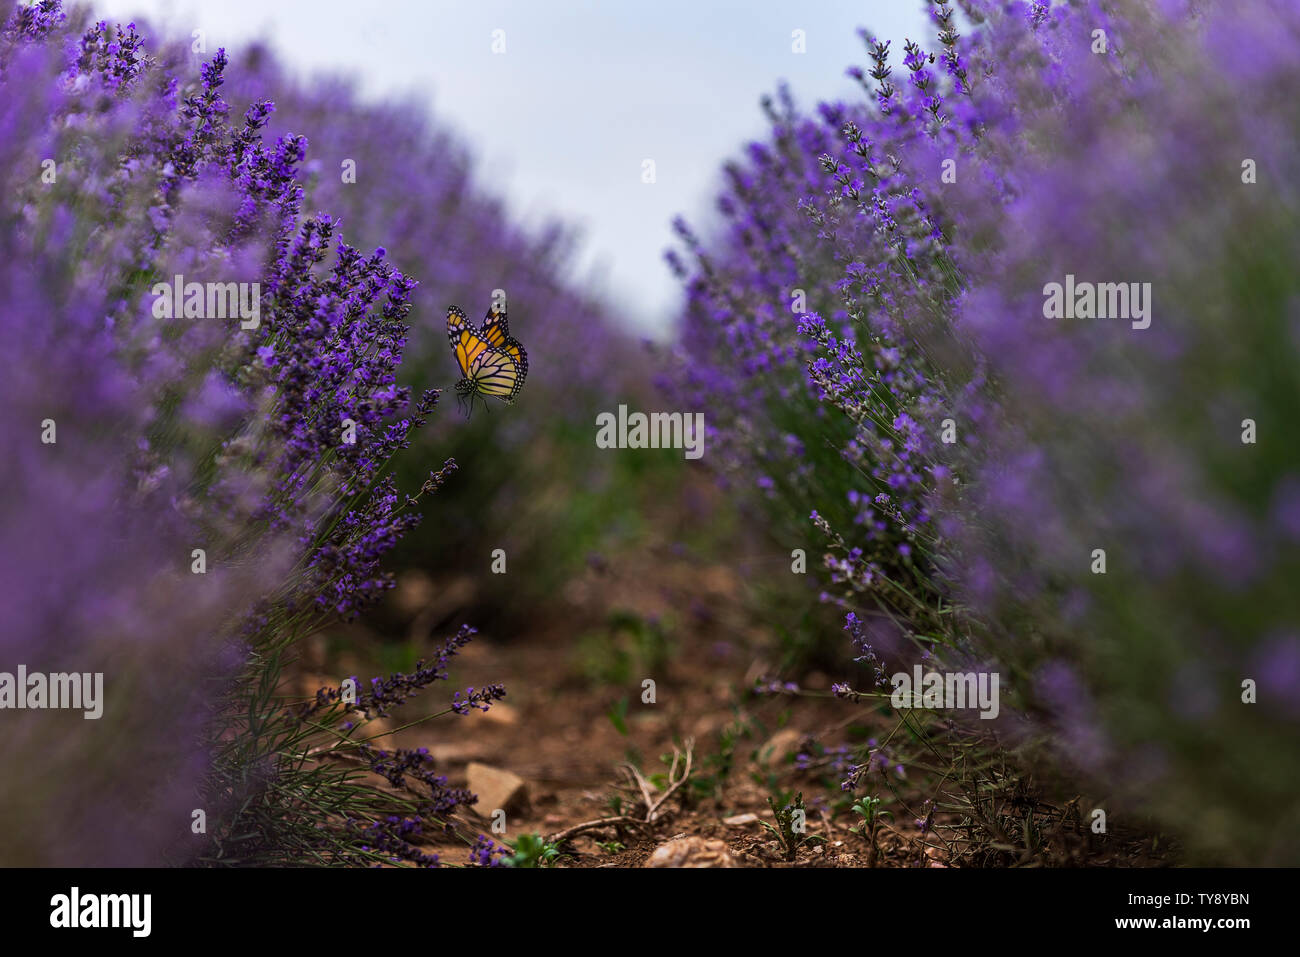 In der Nähe von Büschen von Lavendel Lila aromatischen Blüten im lavendelfeld Reihen Stockfoto